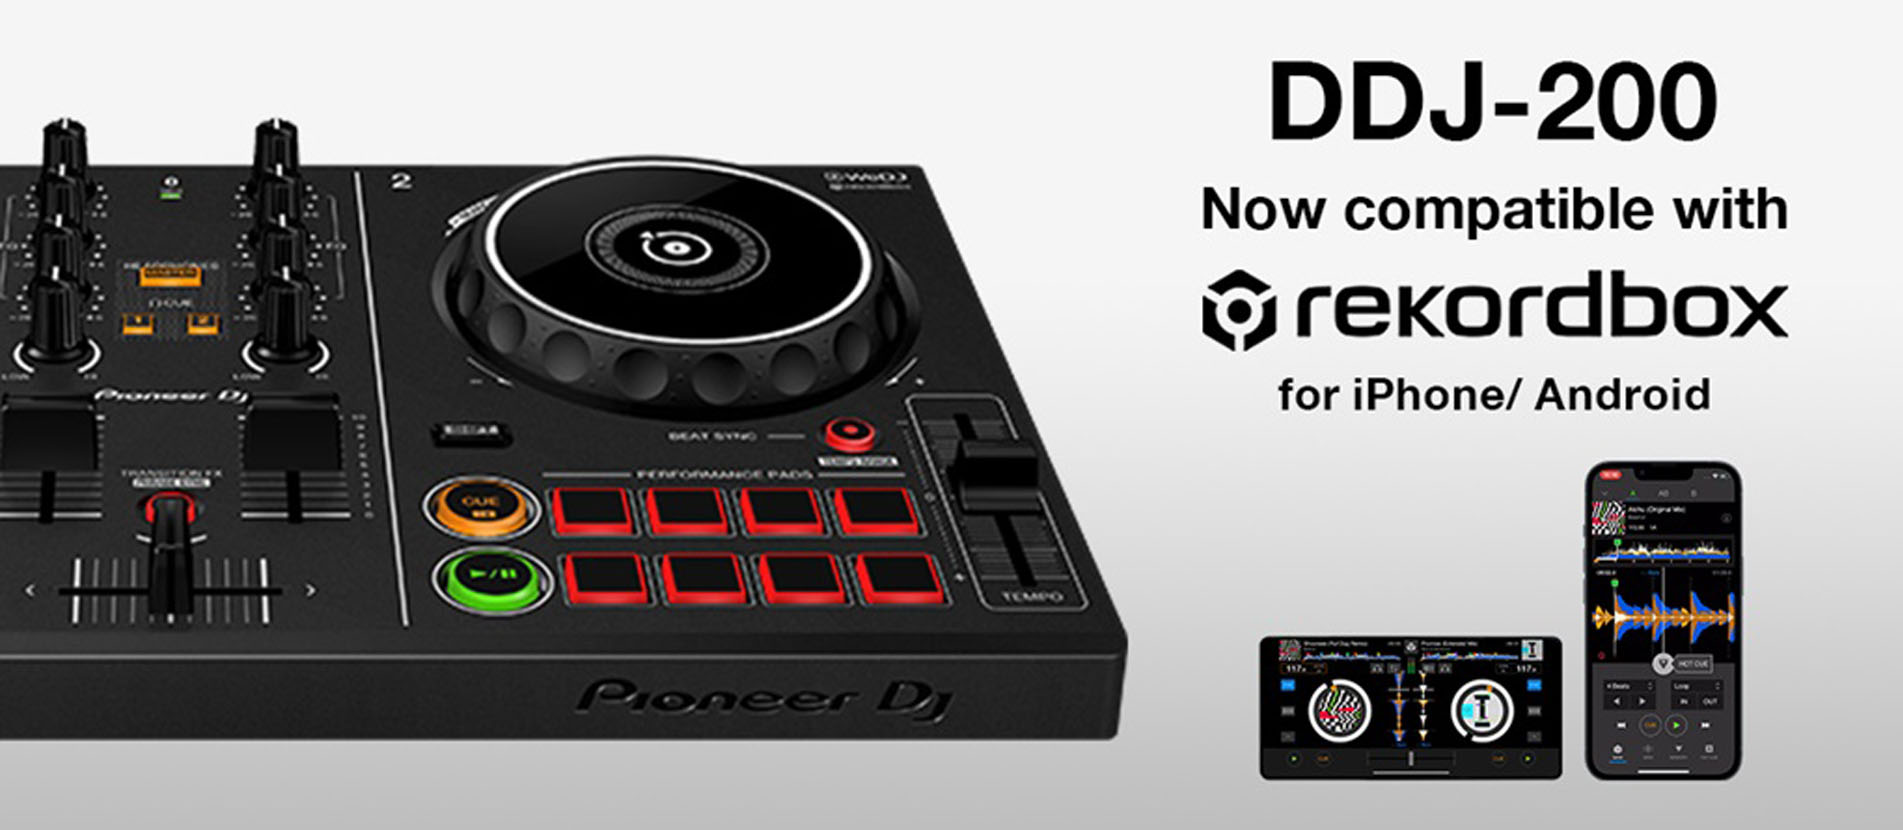 Мобильная версия Rekordbox теперь поддерживает Pioneer DJ DDJ-200